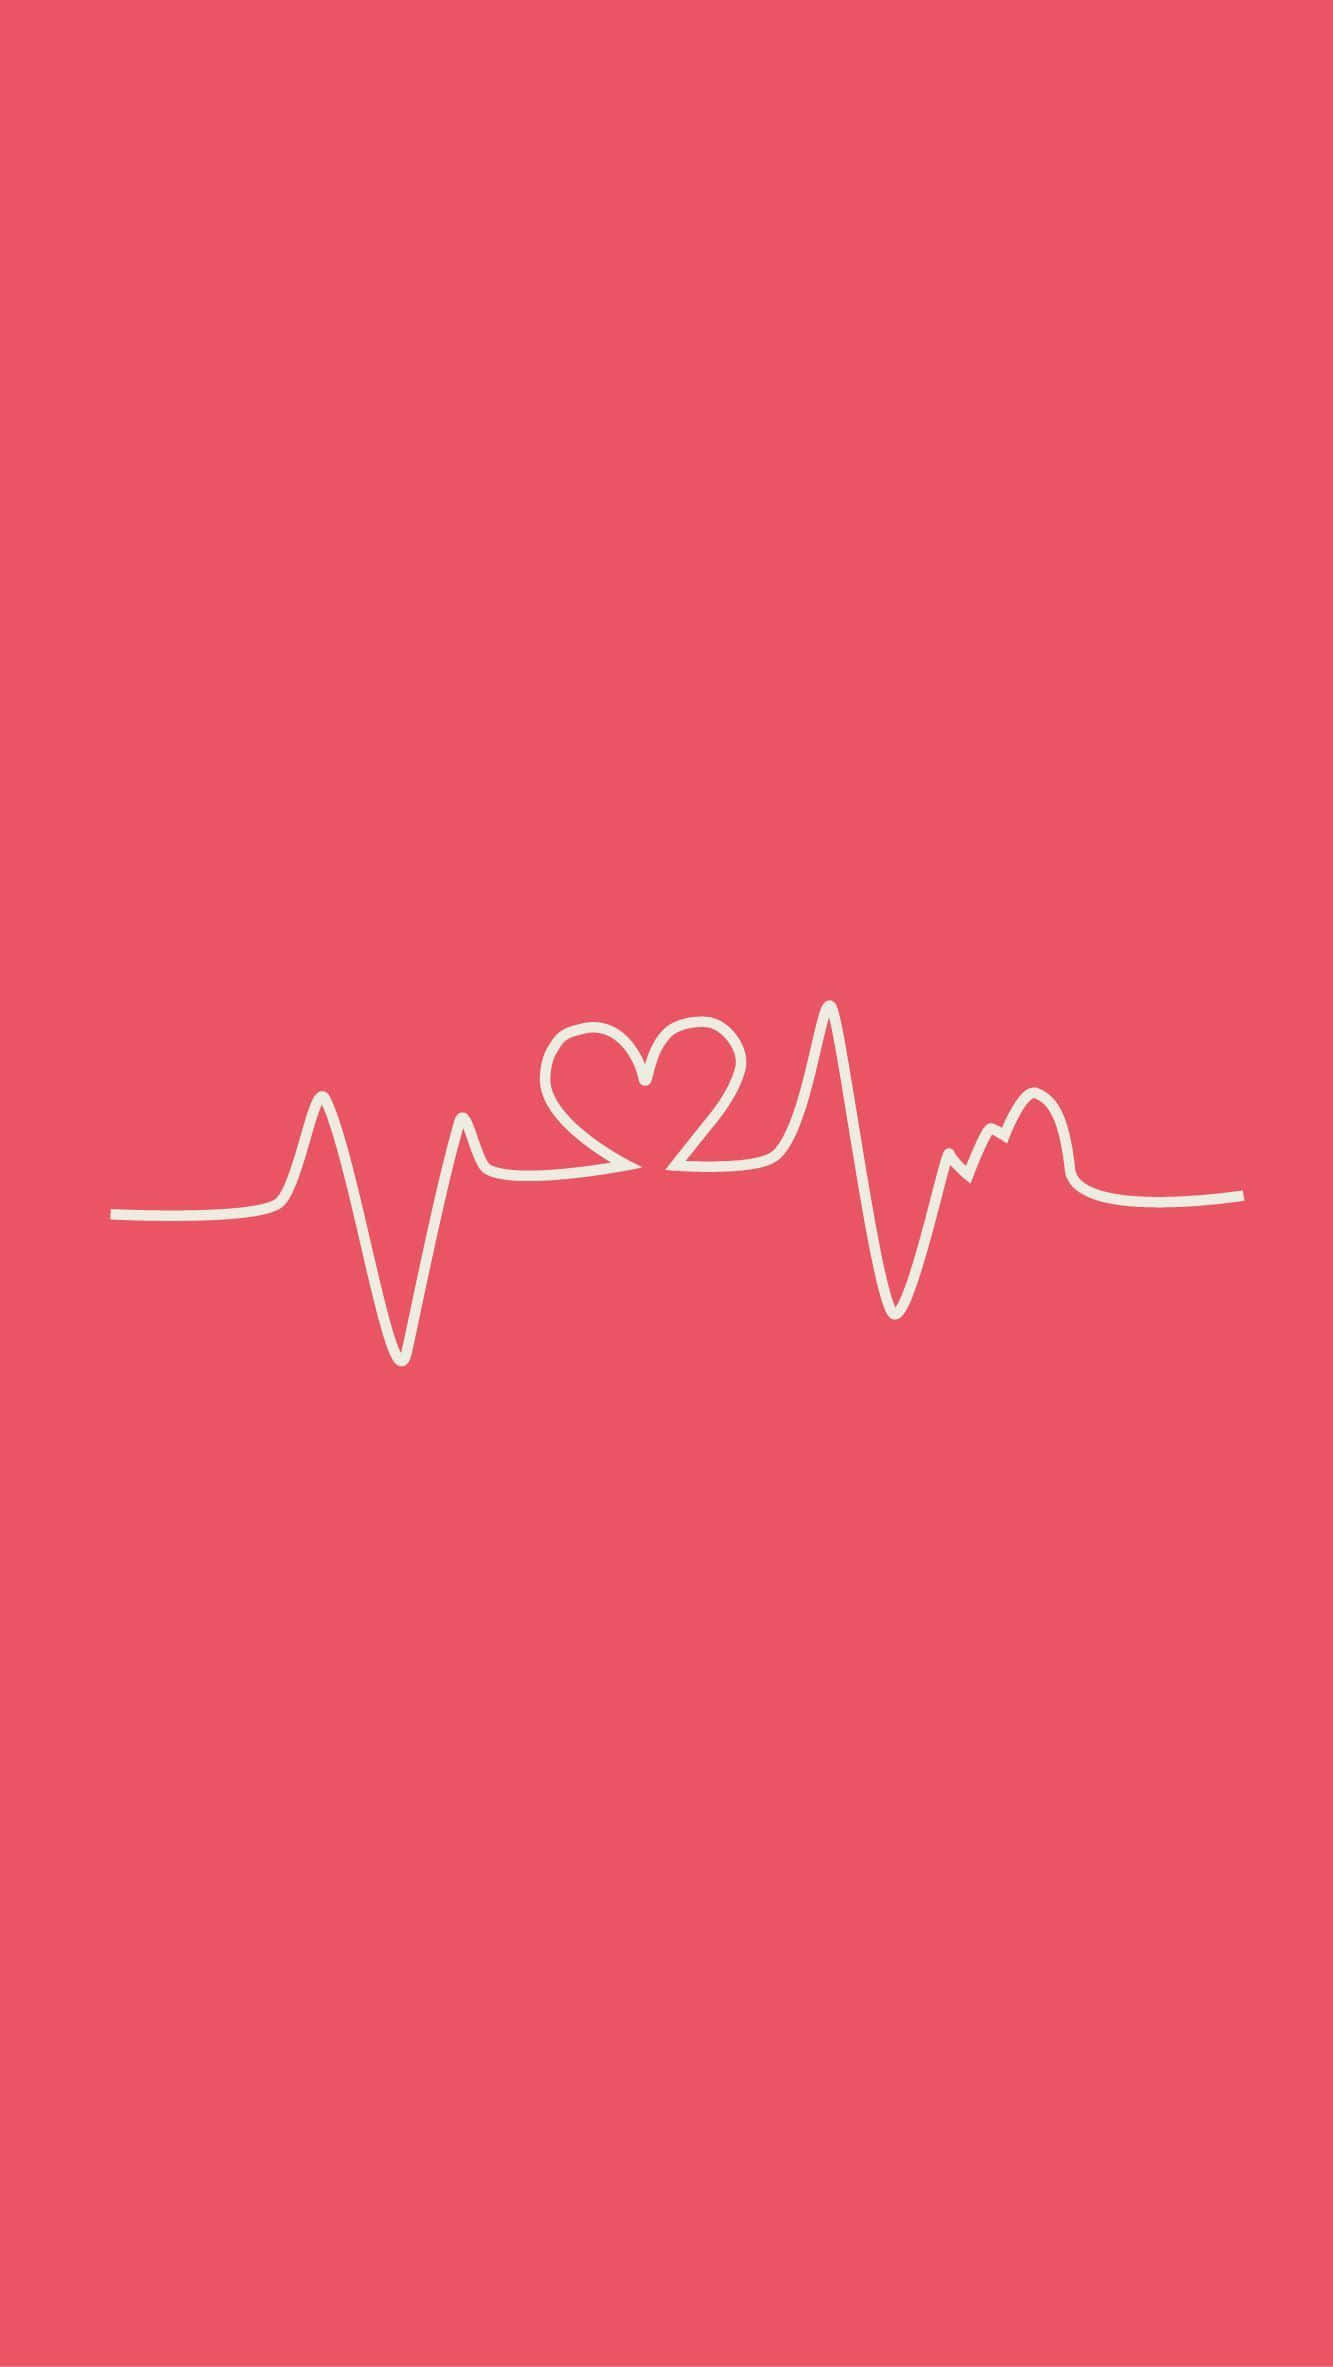 Linhade Batimento Cardíaco Com Coração Em Fundo Rosa